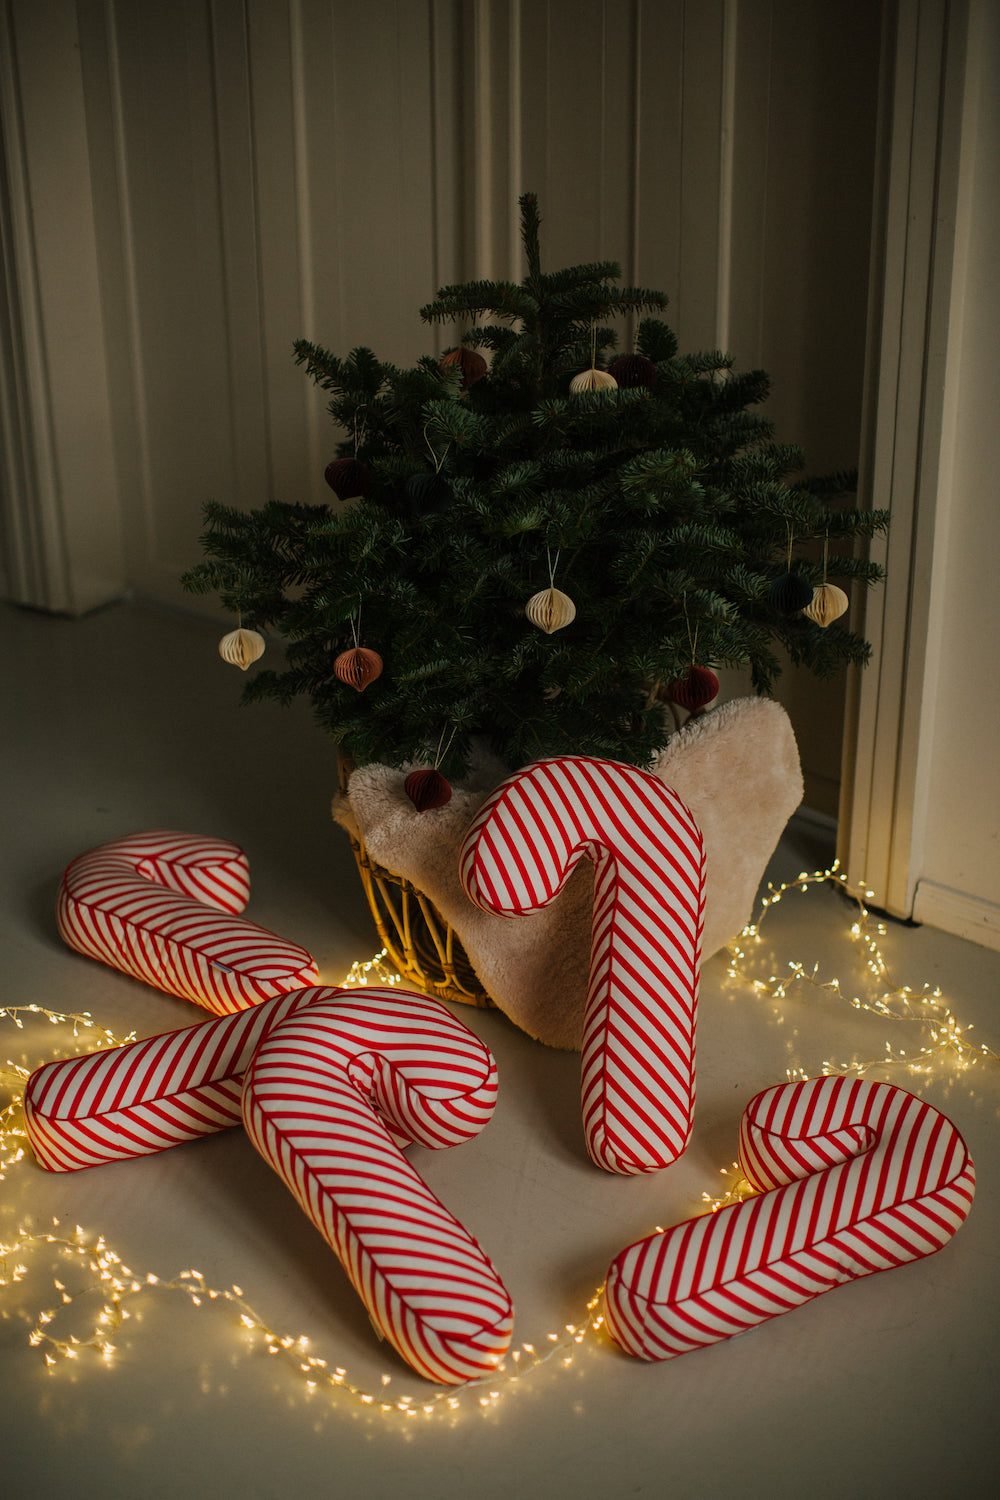 świąteczne poduszki laski w biało czerwone paski od Bettys Home leżące pod choinką jako dekoracje świąteczne